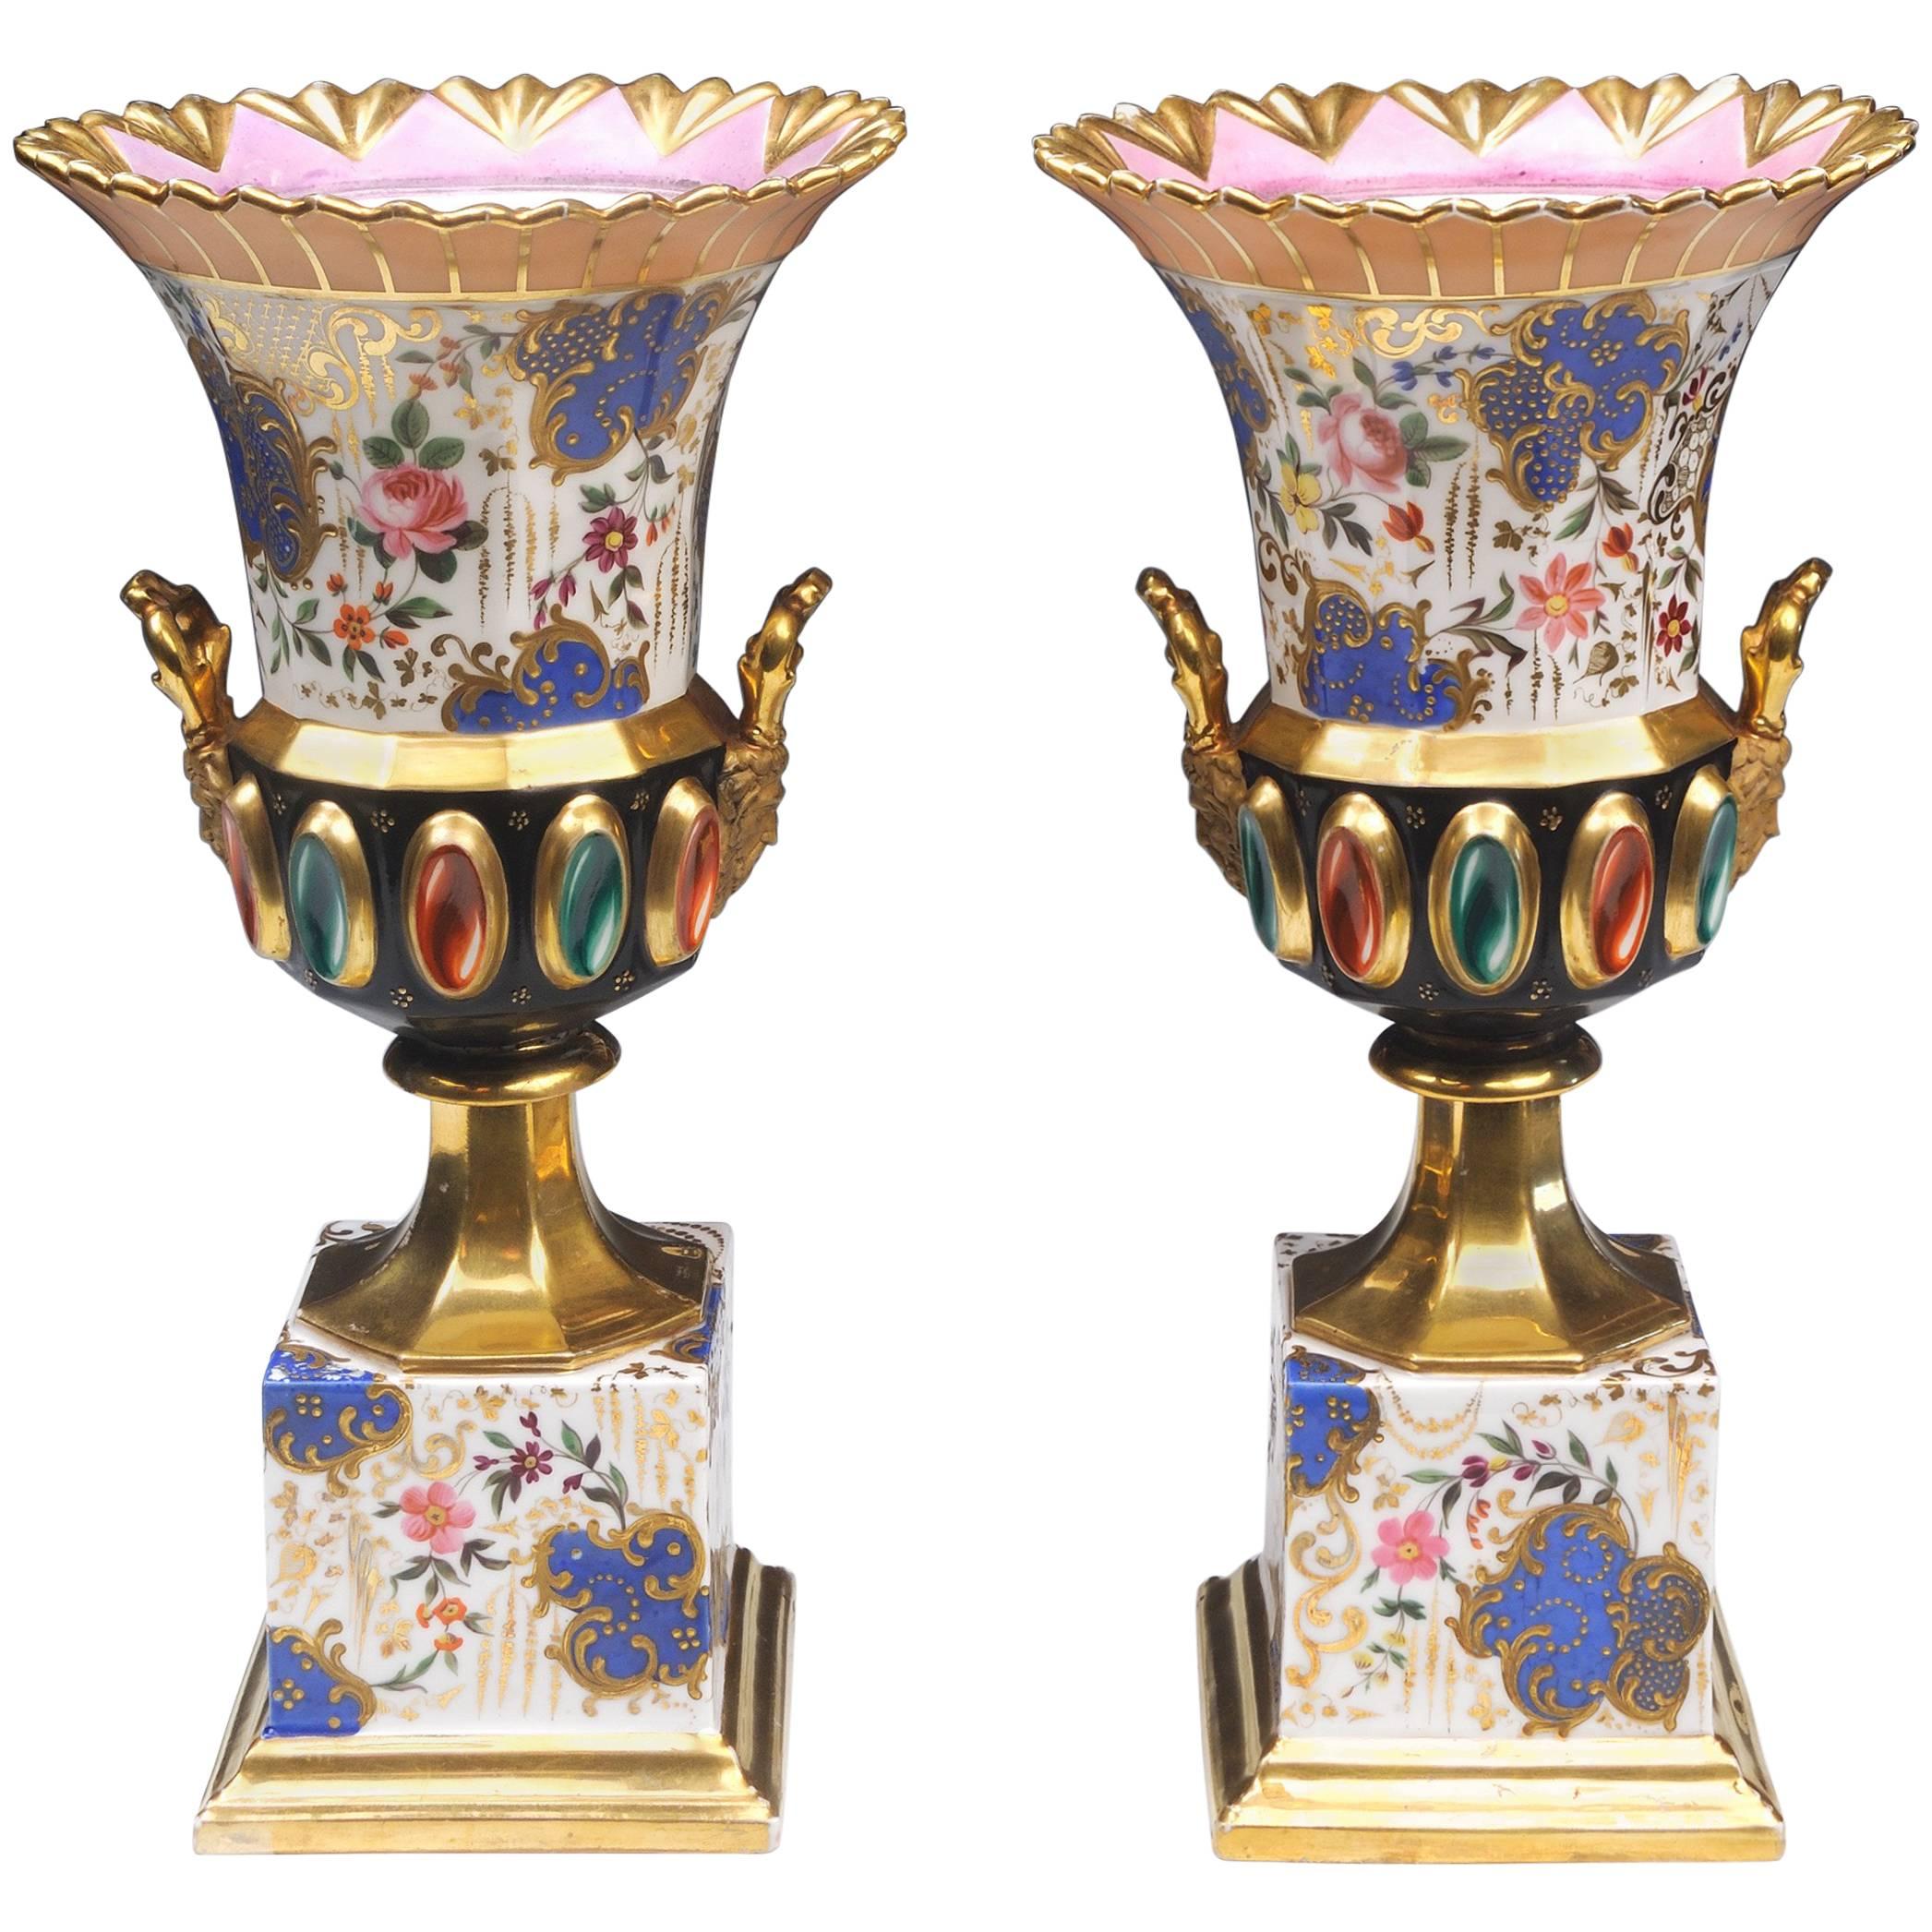 Pair of Paris Porcelain Vases circa 1840